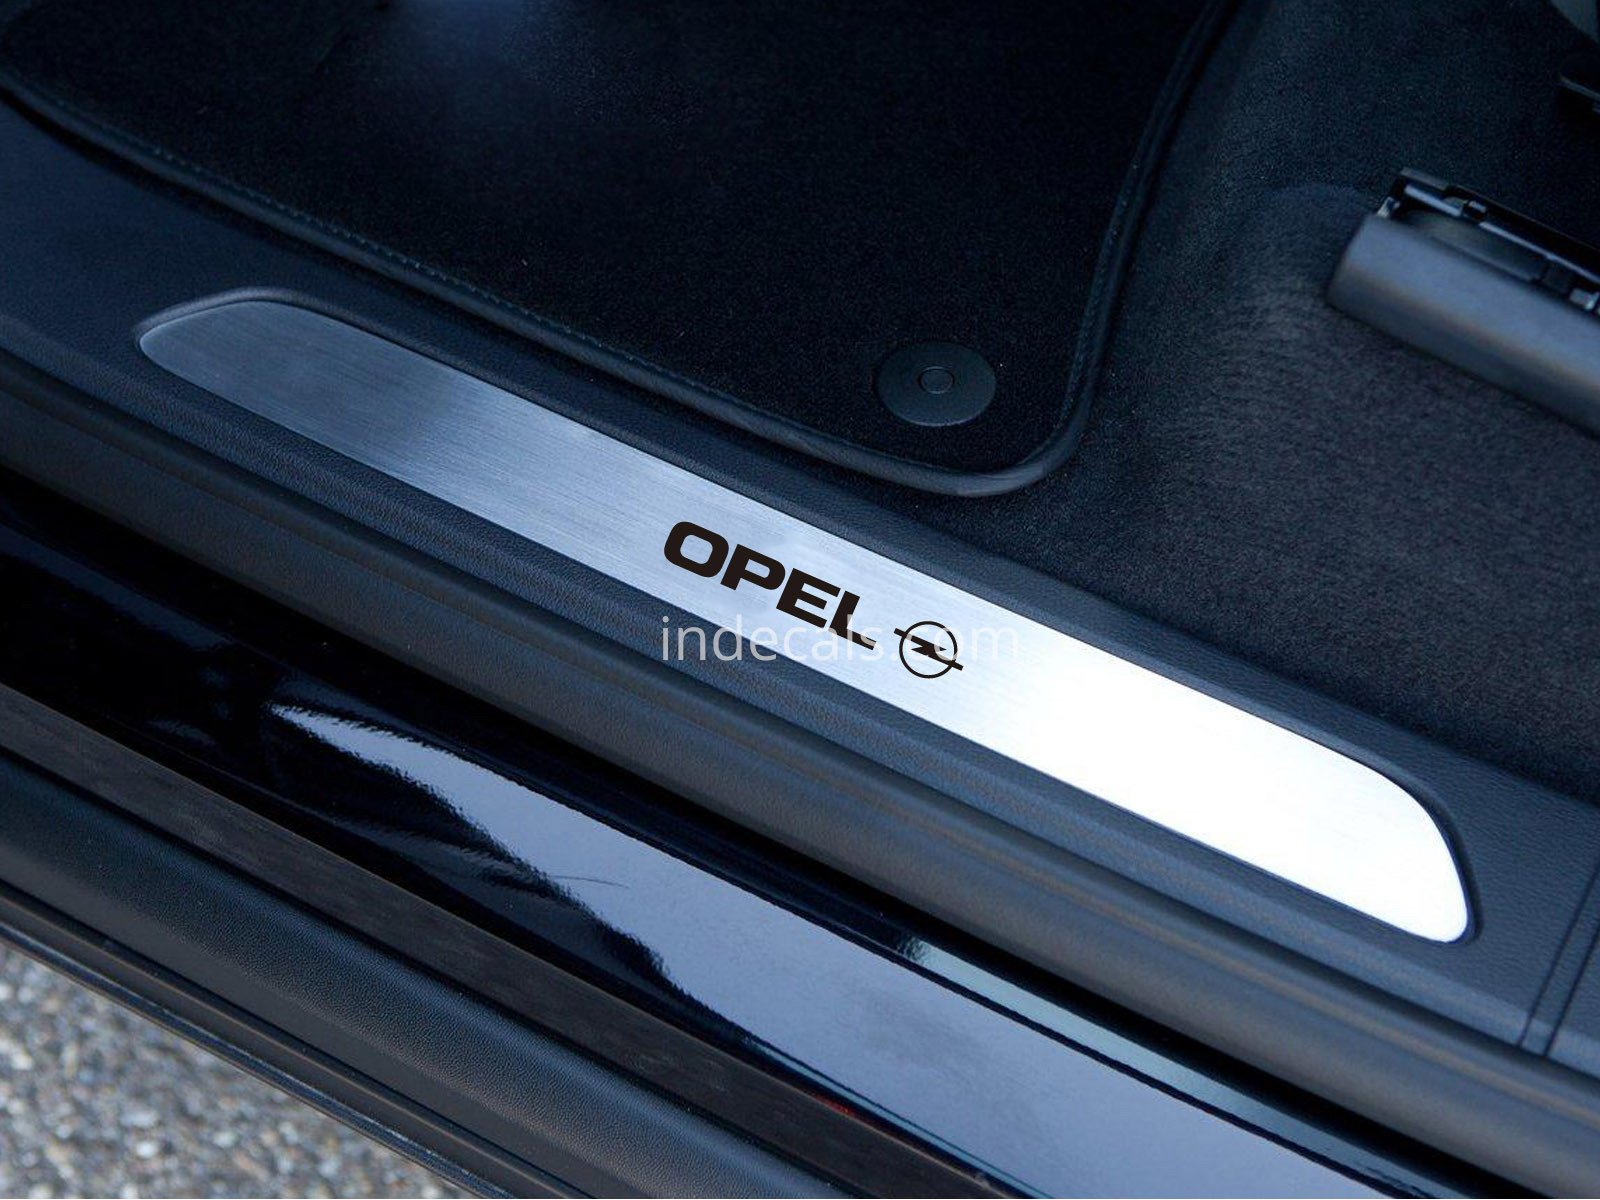 6 x Opel Stickers for Door Sills - Black